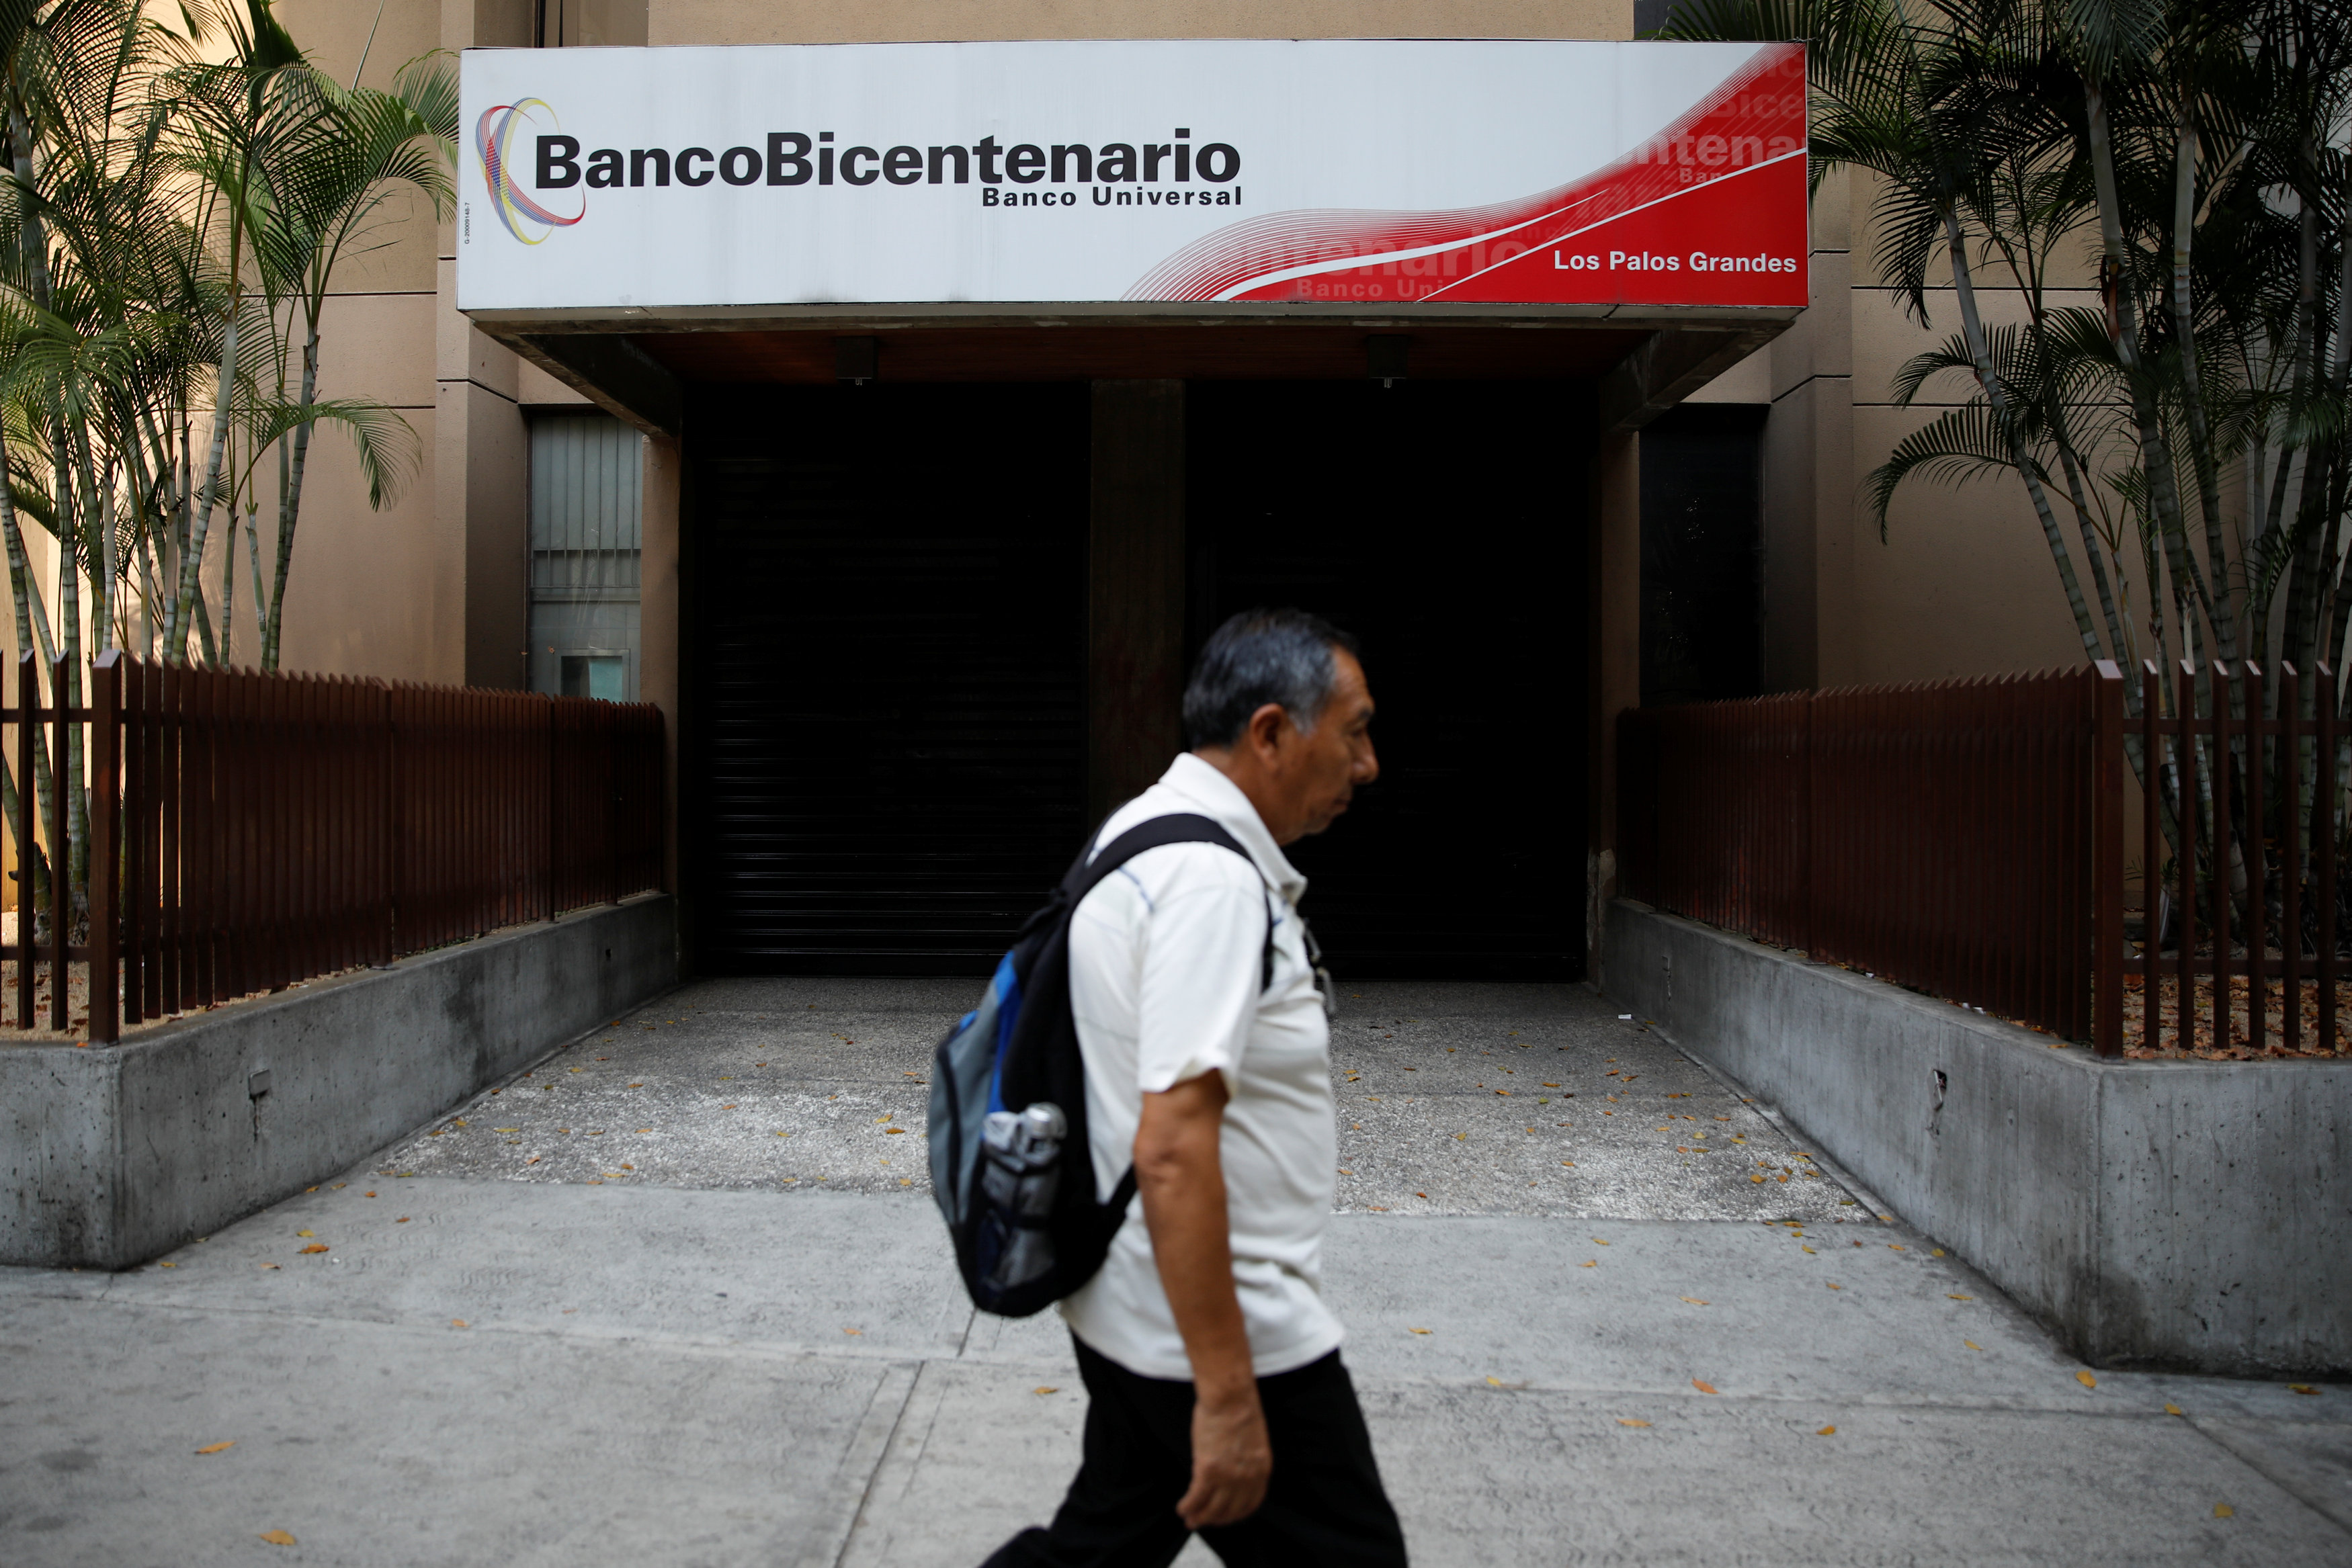 Banco Bicentenario denunció “ataque terrorista” en su plataforma